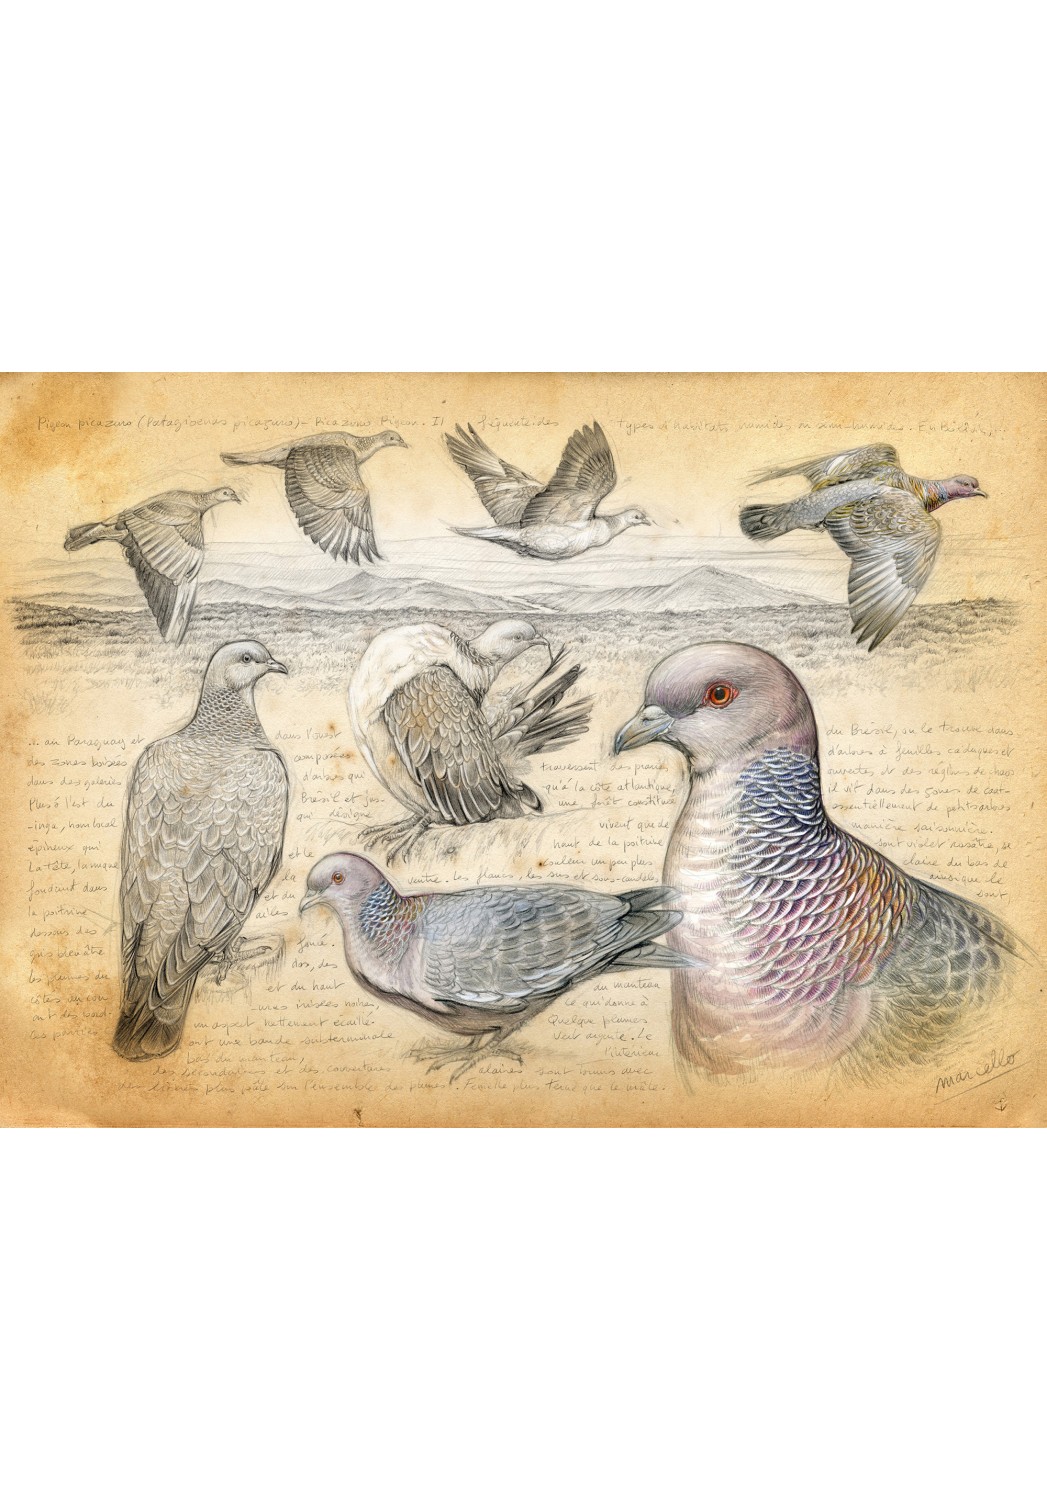 Marcello-art : Cartes de faire part 233 - Pigeon picazuro